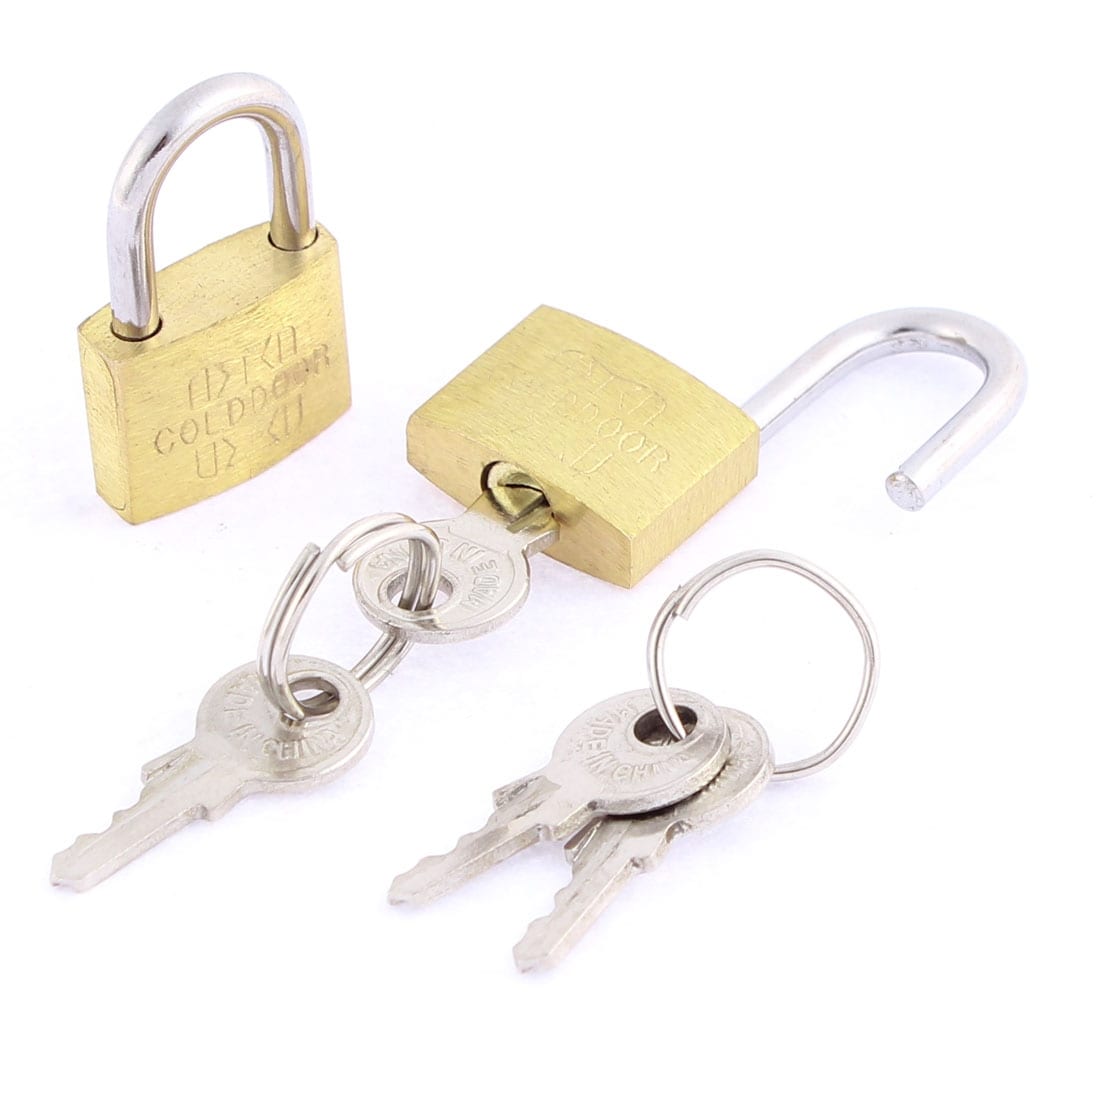 tiny padlock and key